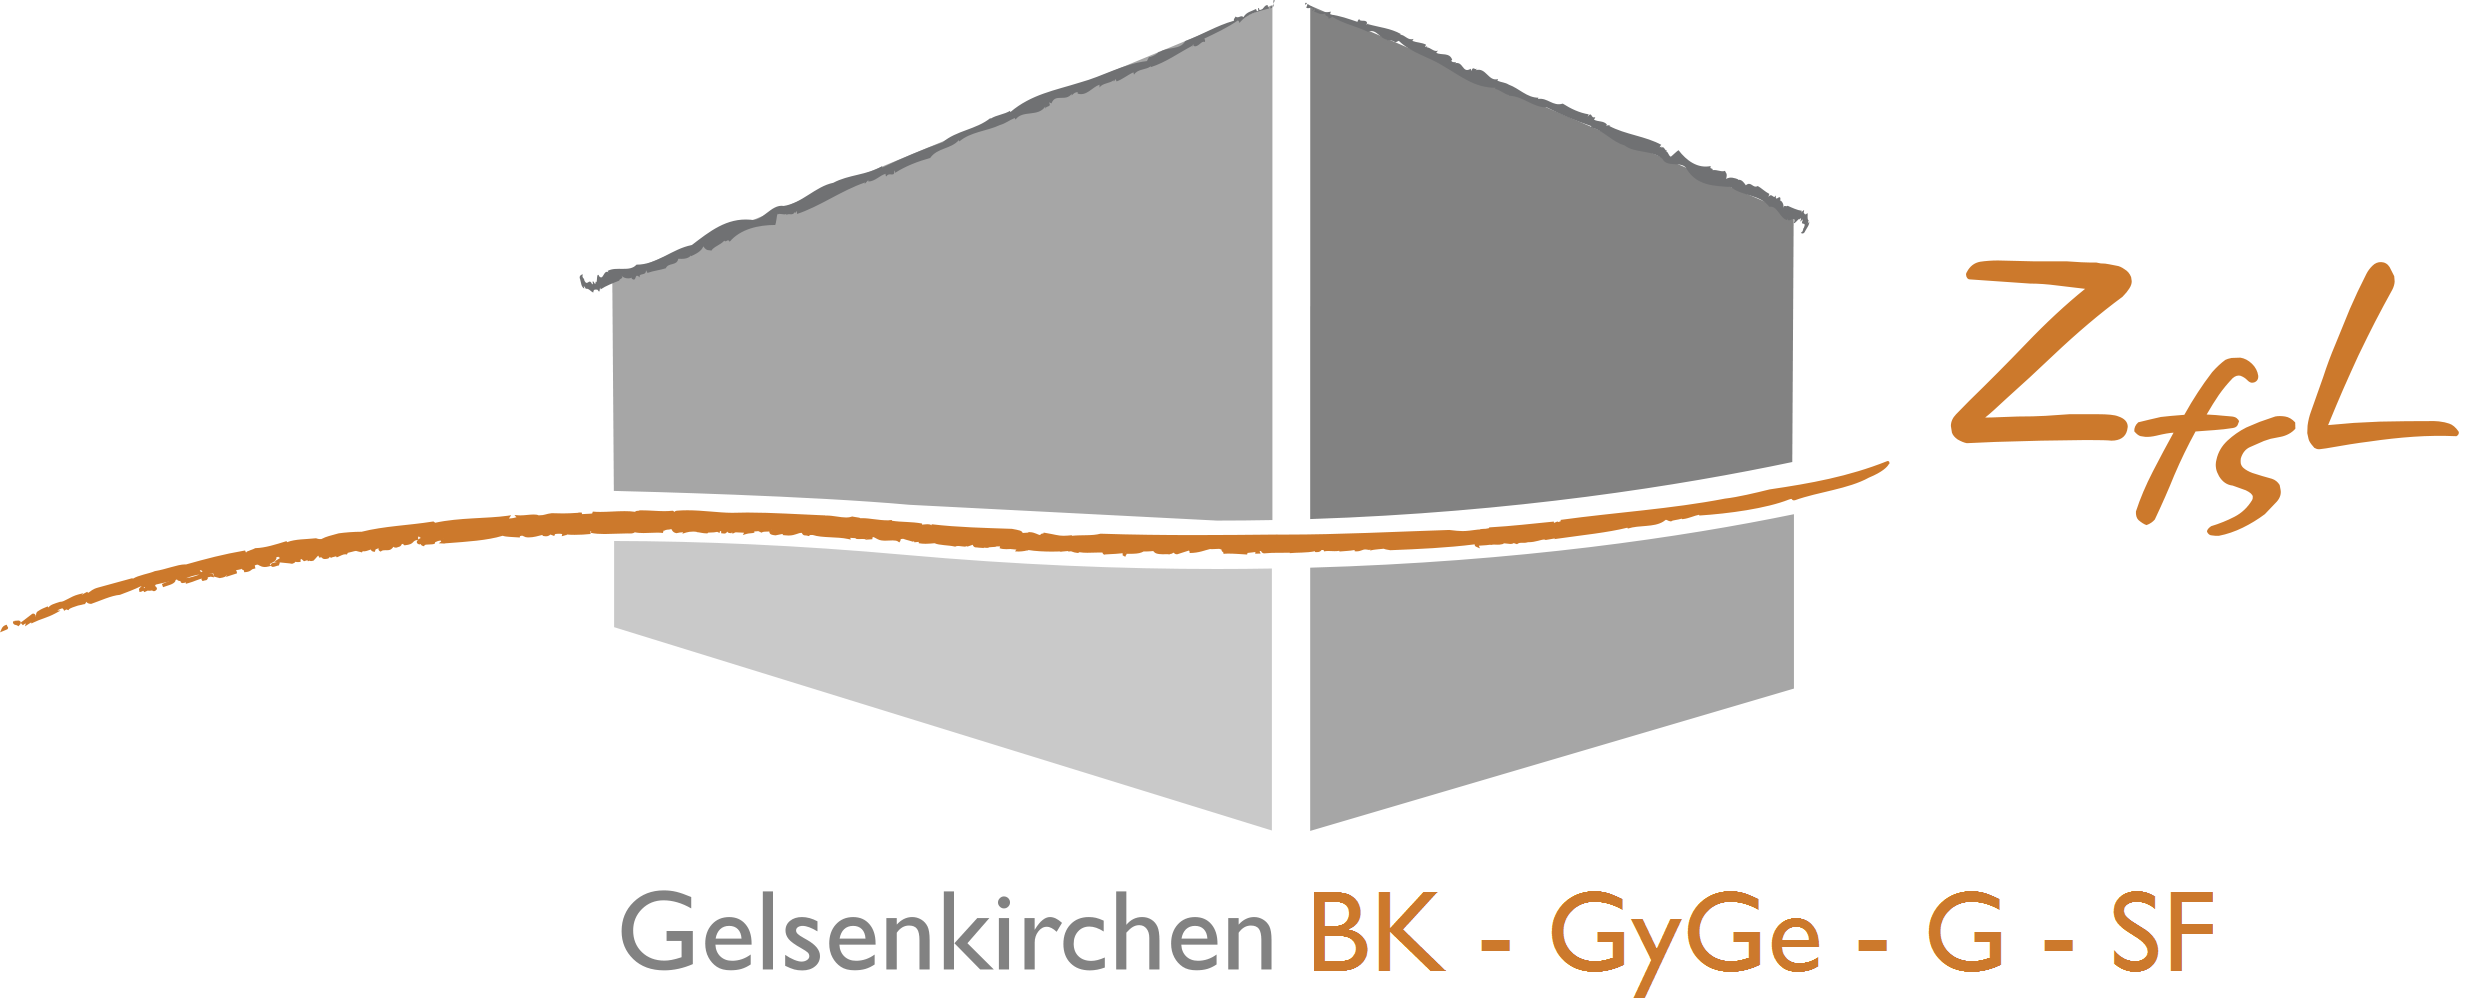 Logo des ZfsL Gelsenkirchen